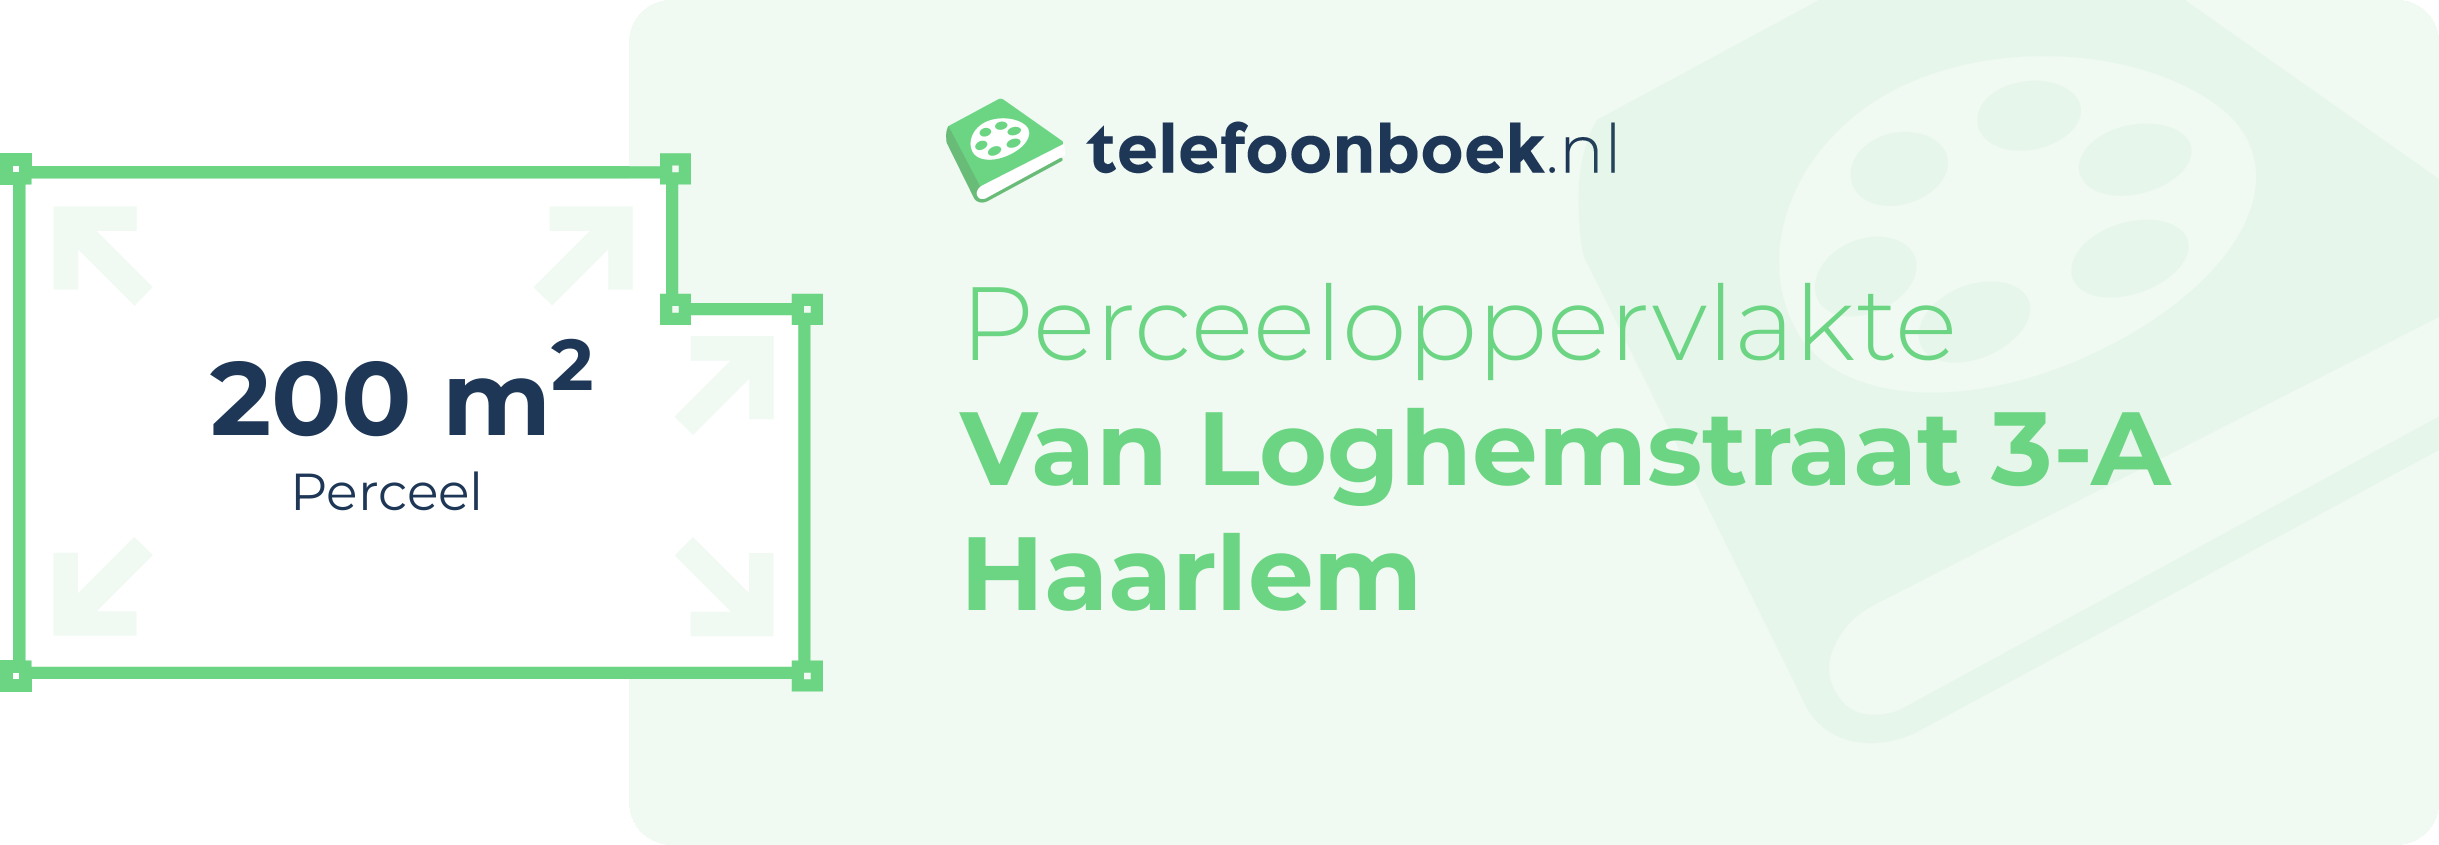 Perceeloppervlakte Van Loghemstraat 3-A Haarlem